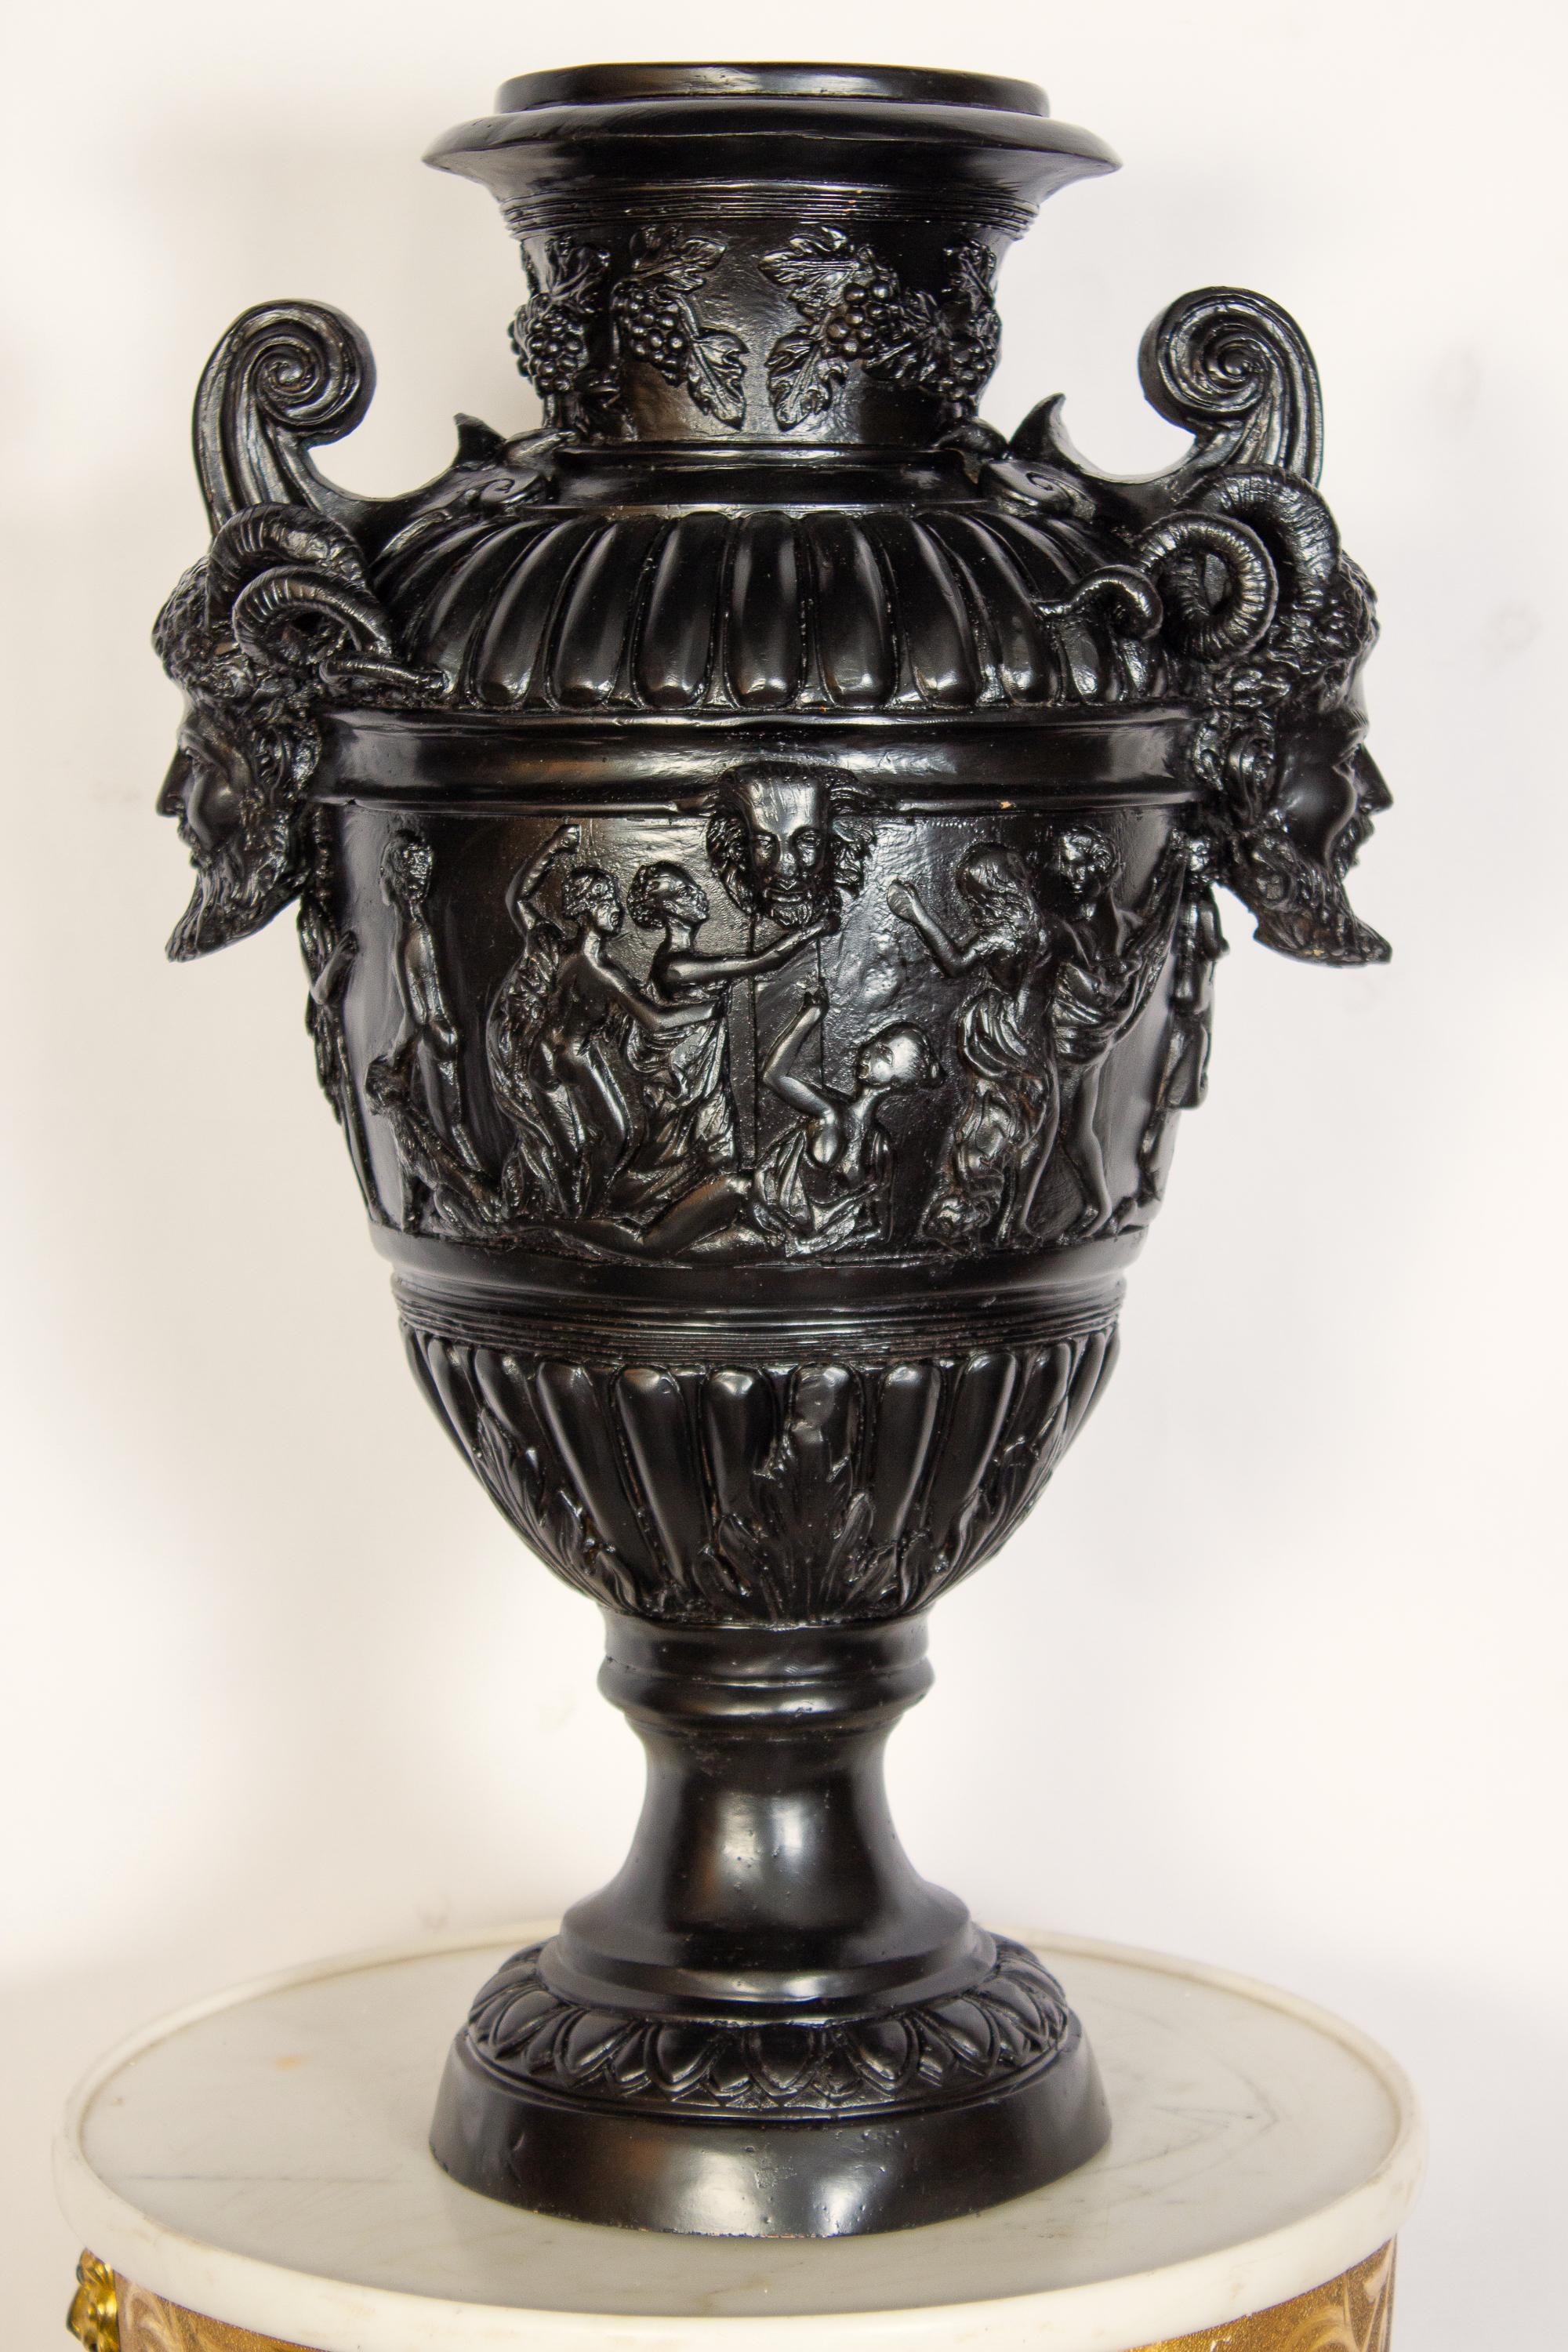 Impressionnante paire de vases en bronze patiné noir dans le style de la Renaissance. Poignées finement décorées d'une figure de satyre, surmontée d'un corps entouré de scènes de bacchanales.
Décoration exquise pour votre intérieur ou votre jardin.
 